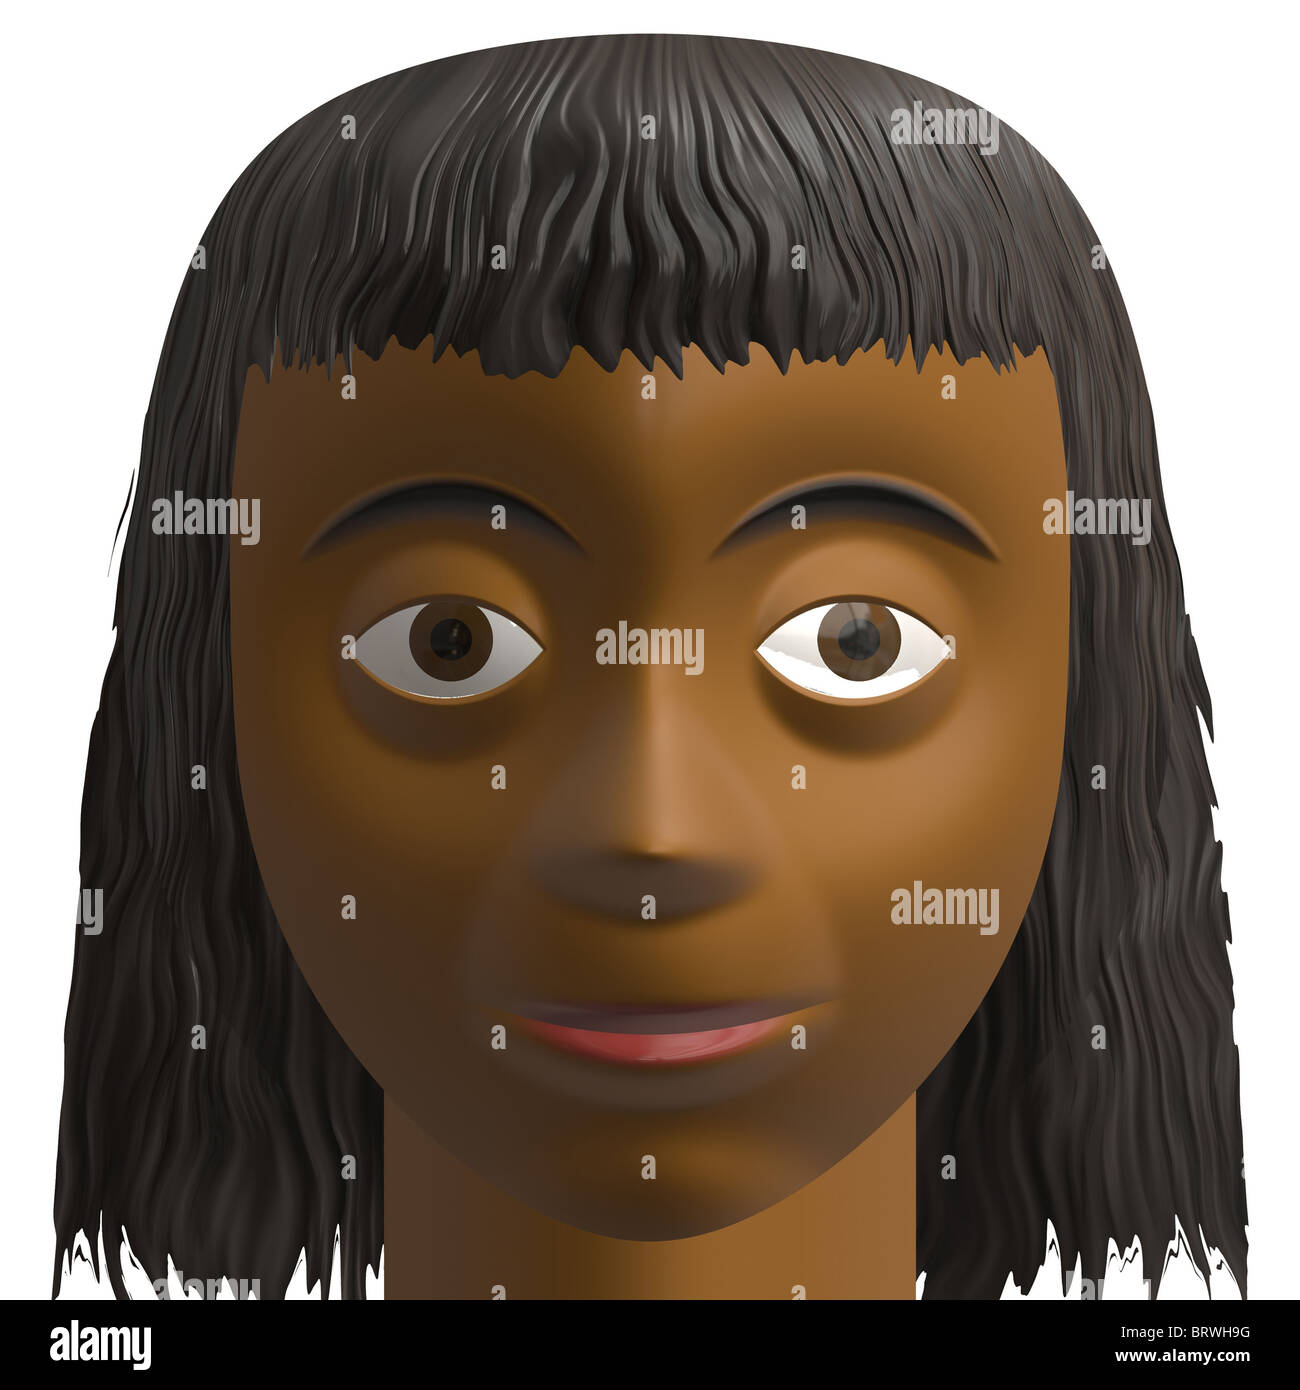 Avatar de synthèse d'un African American teint foncé ou brune indienne femme portrait portrait Banque D'Images